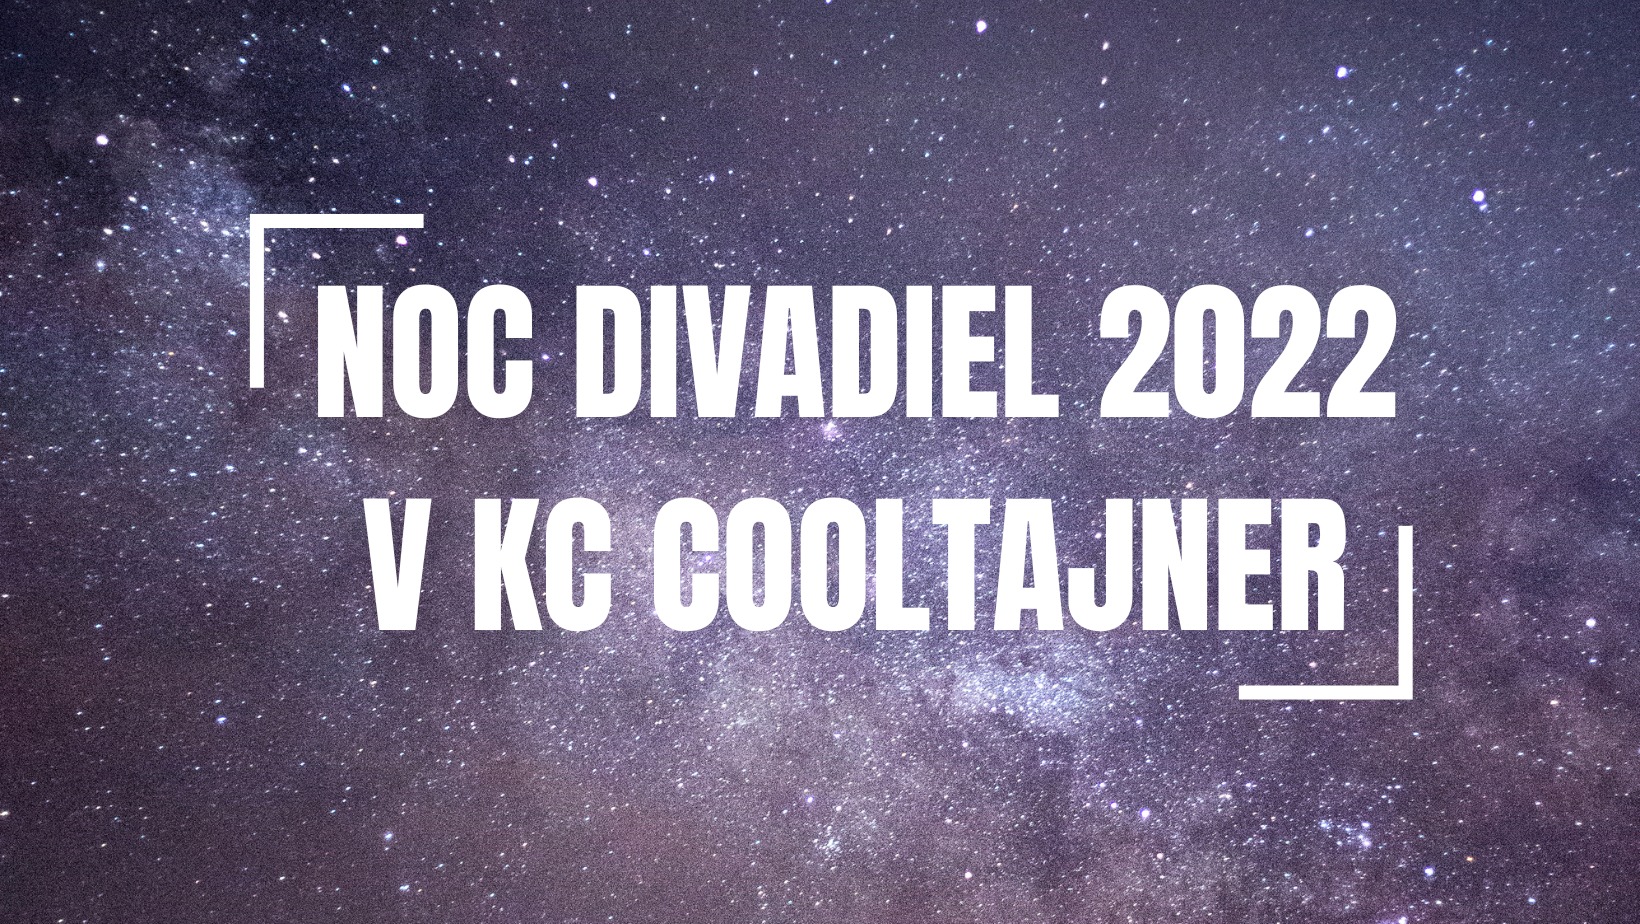 Noc divadiel 2022 v KC Cooltajner Koridor